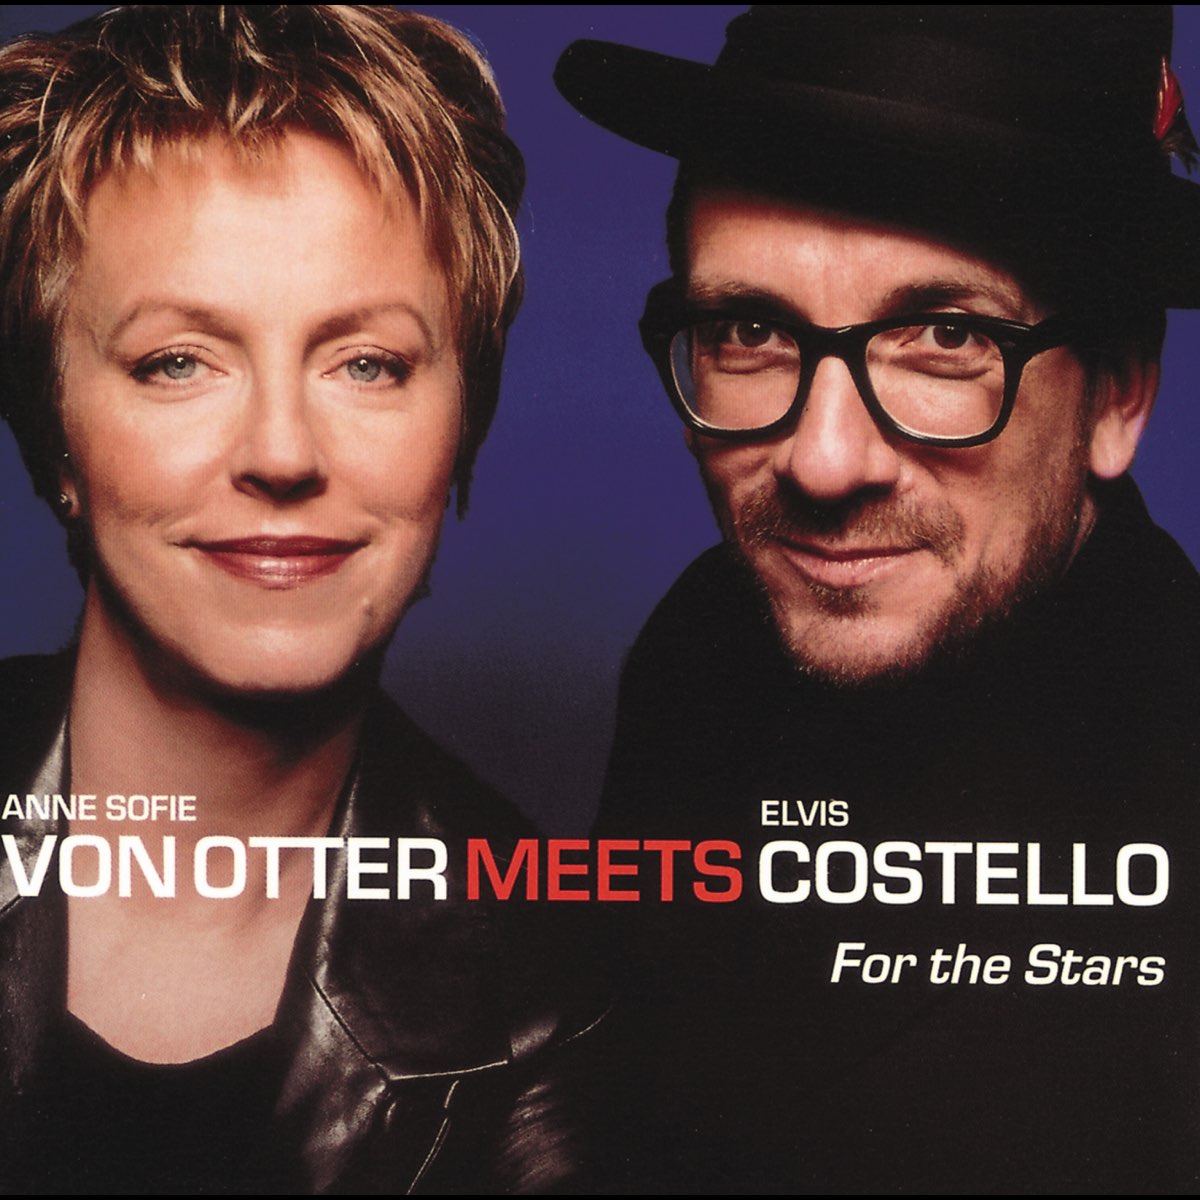 For the Stars by Anne Sofie von Otter & Elvis Costello on Apple Music